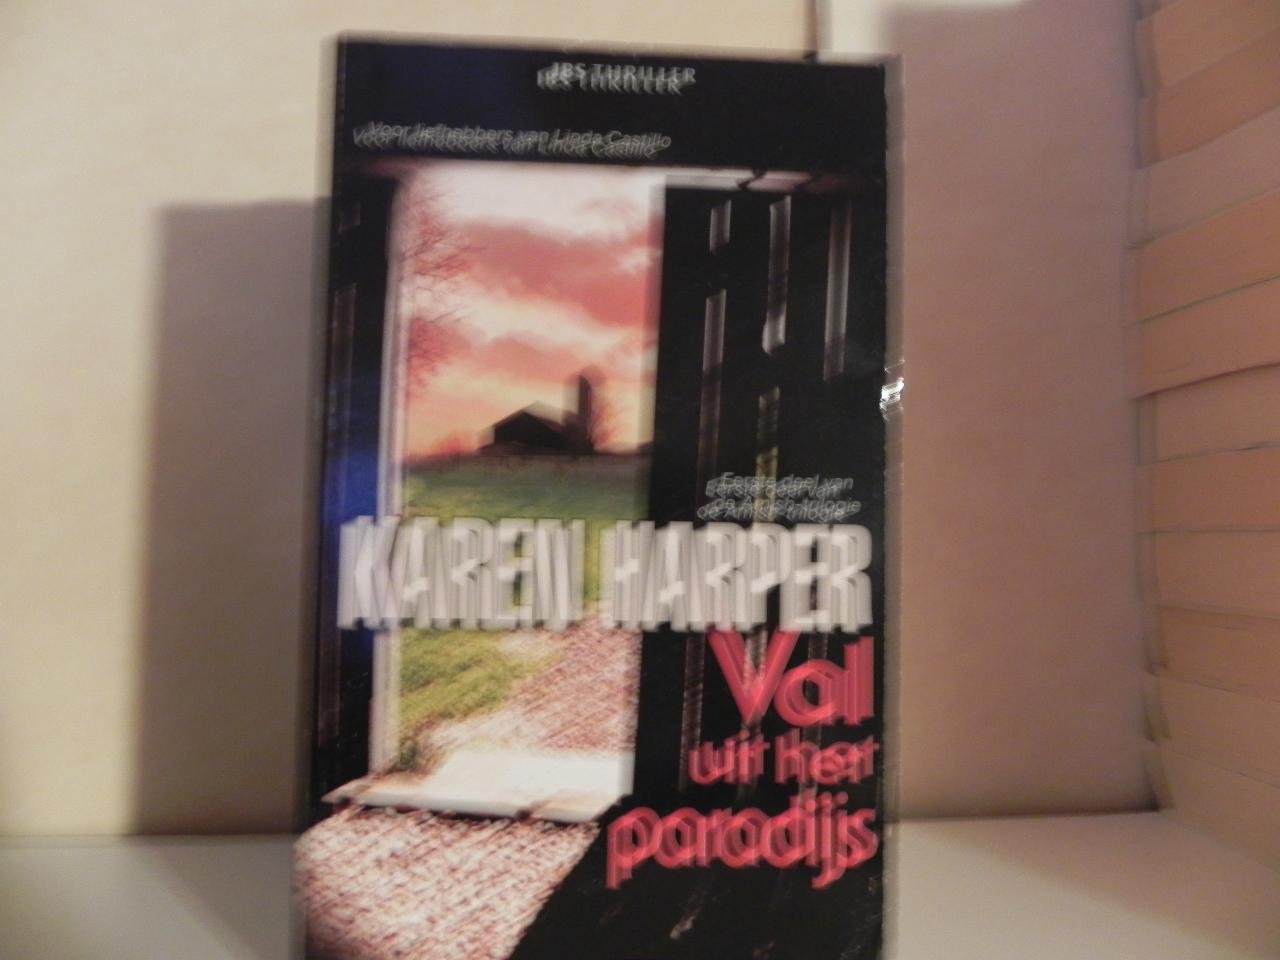 Karen Harper - Val uit het paradijs